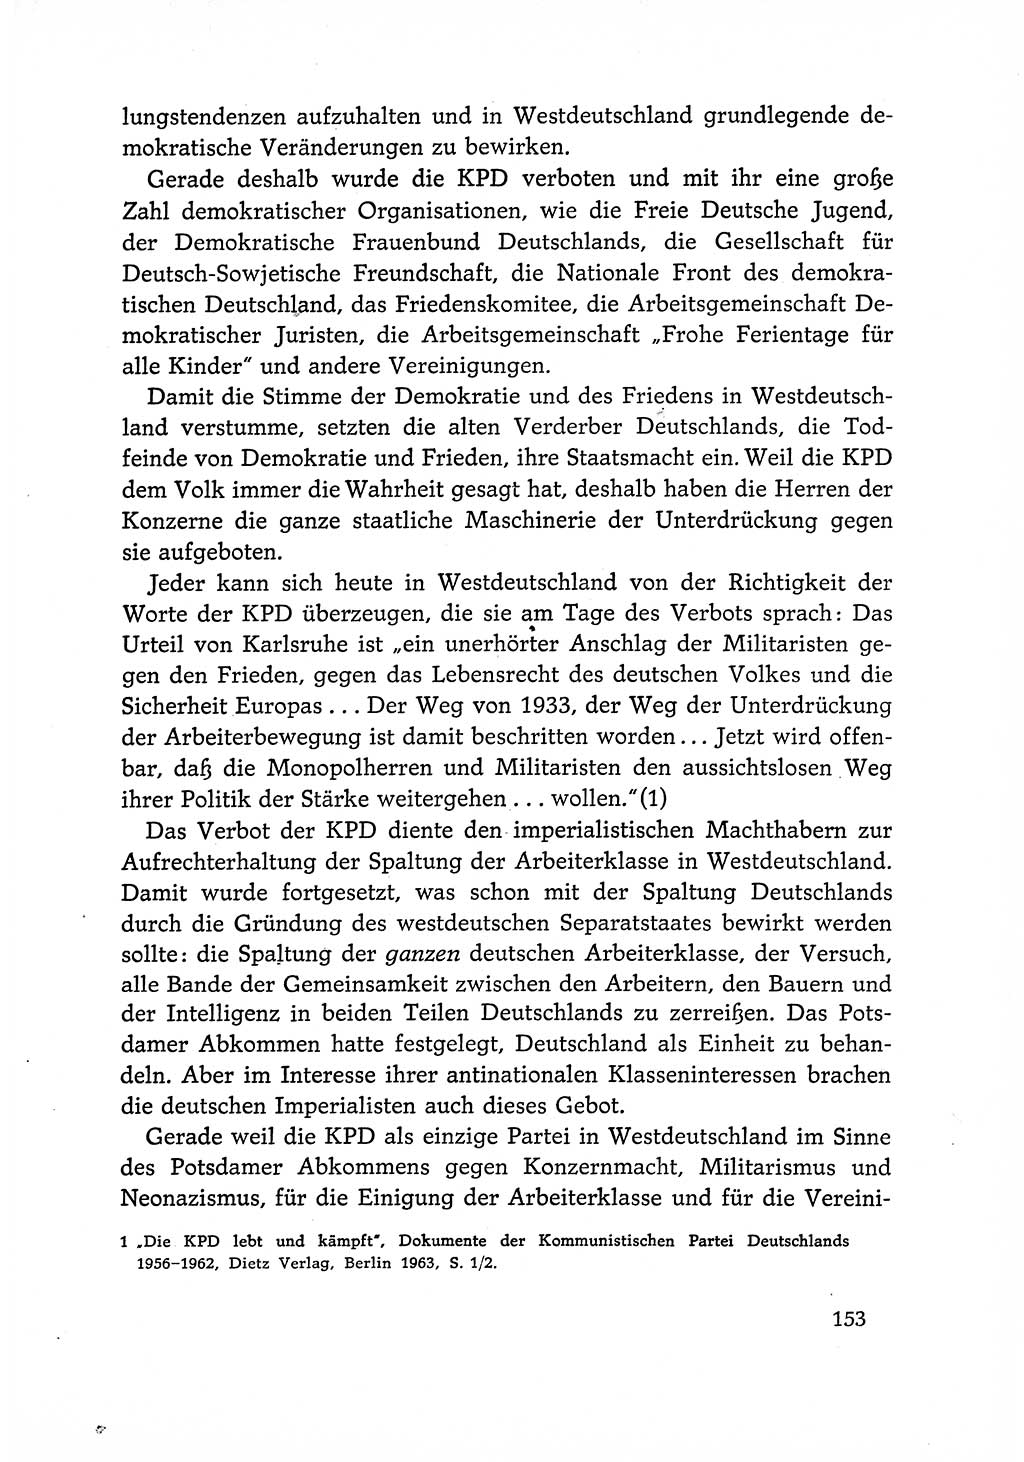 Dokumente der Sozialistischen Einheitspartei Deutschlands (SED) [Deutsche Demokratische Republik (DDR)] 1966-1967, Seite 153 (Dok. SED DDR 1966-1967, S. 153)